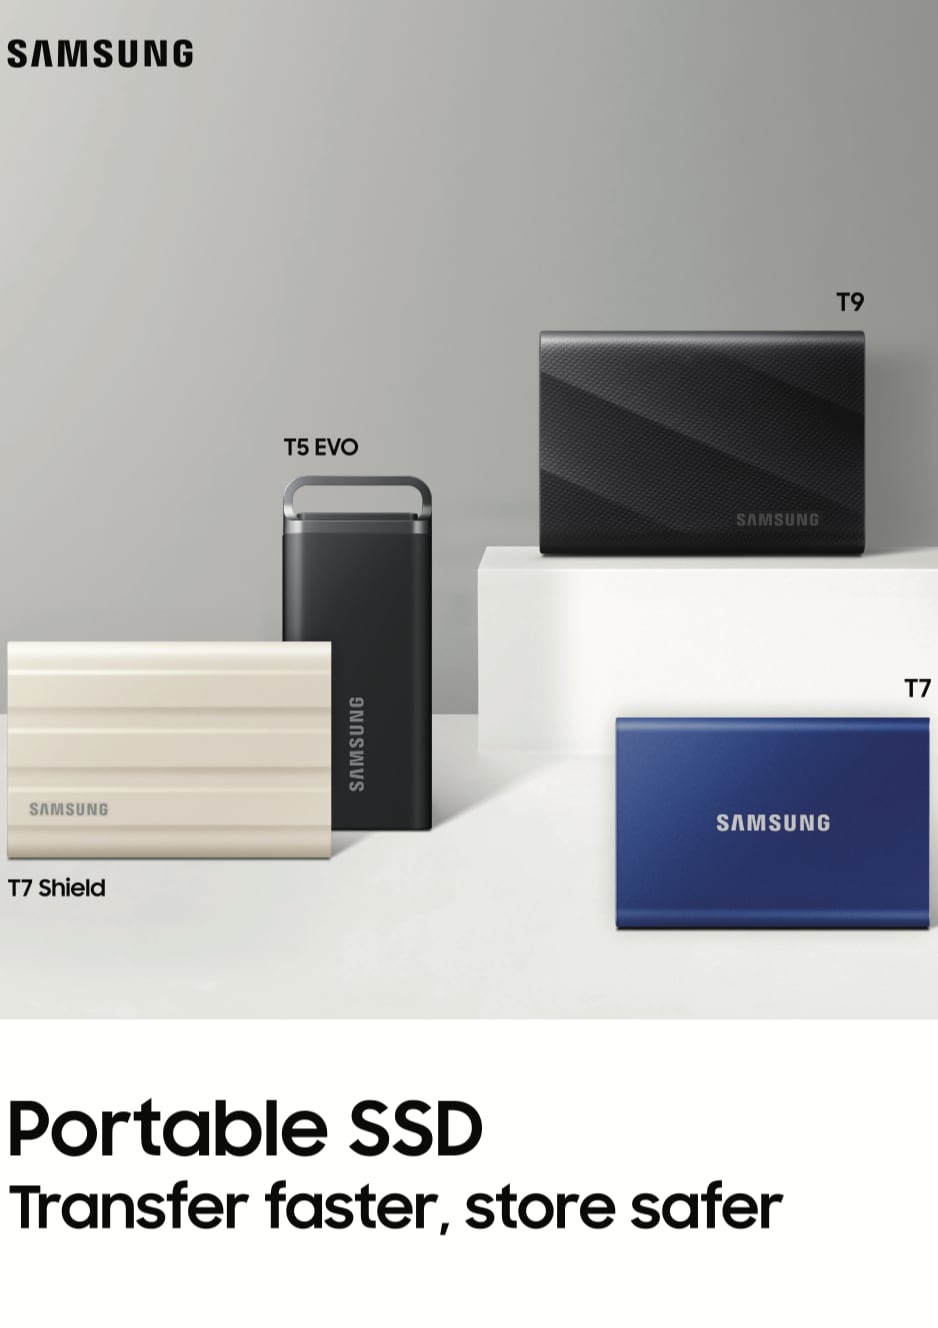 Disque dur externe SSD T7 USB 3.2 500Go Gris - SAMSUNG - HD_EXT_SAM_T7_500G  